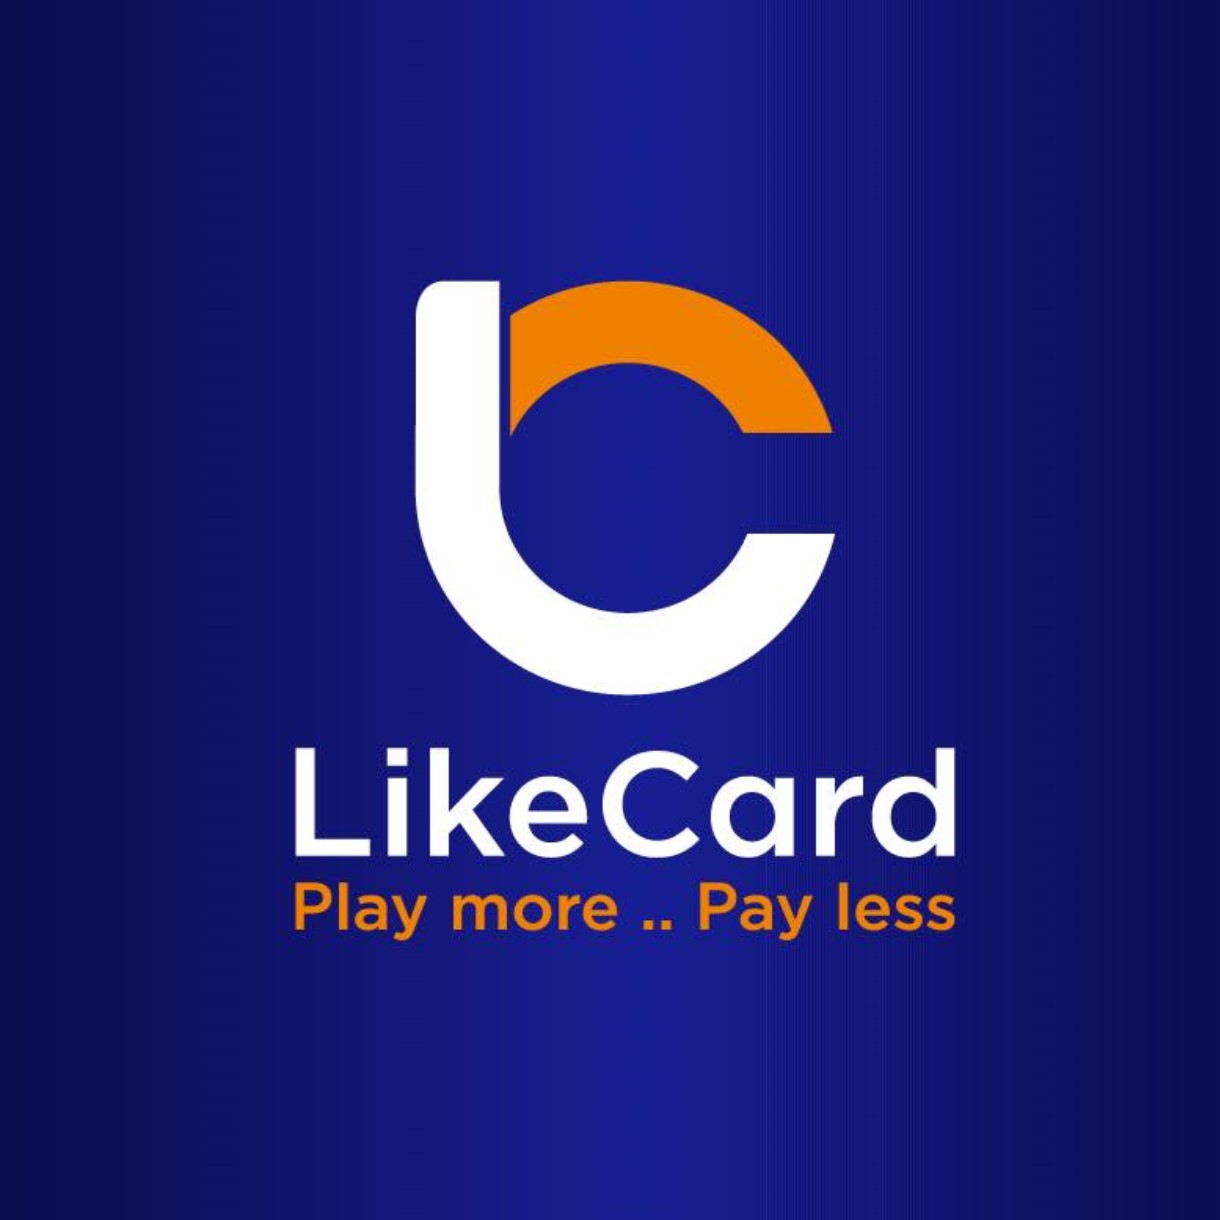 LikeCard Company